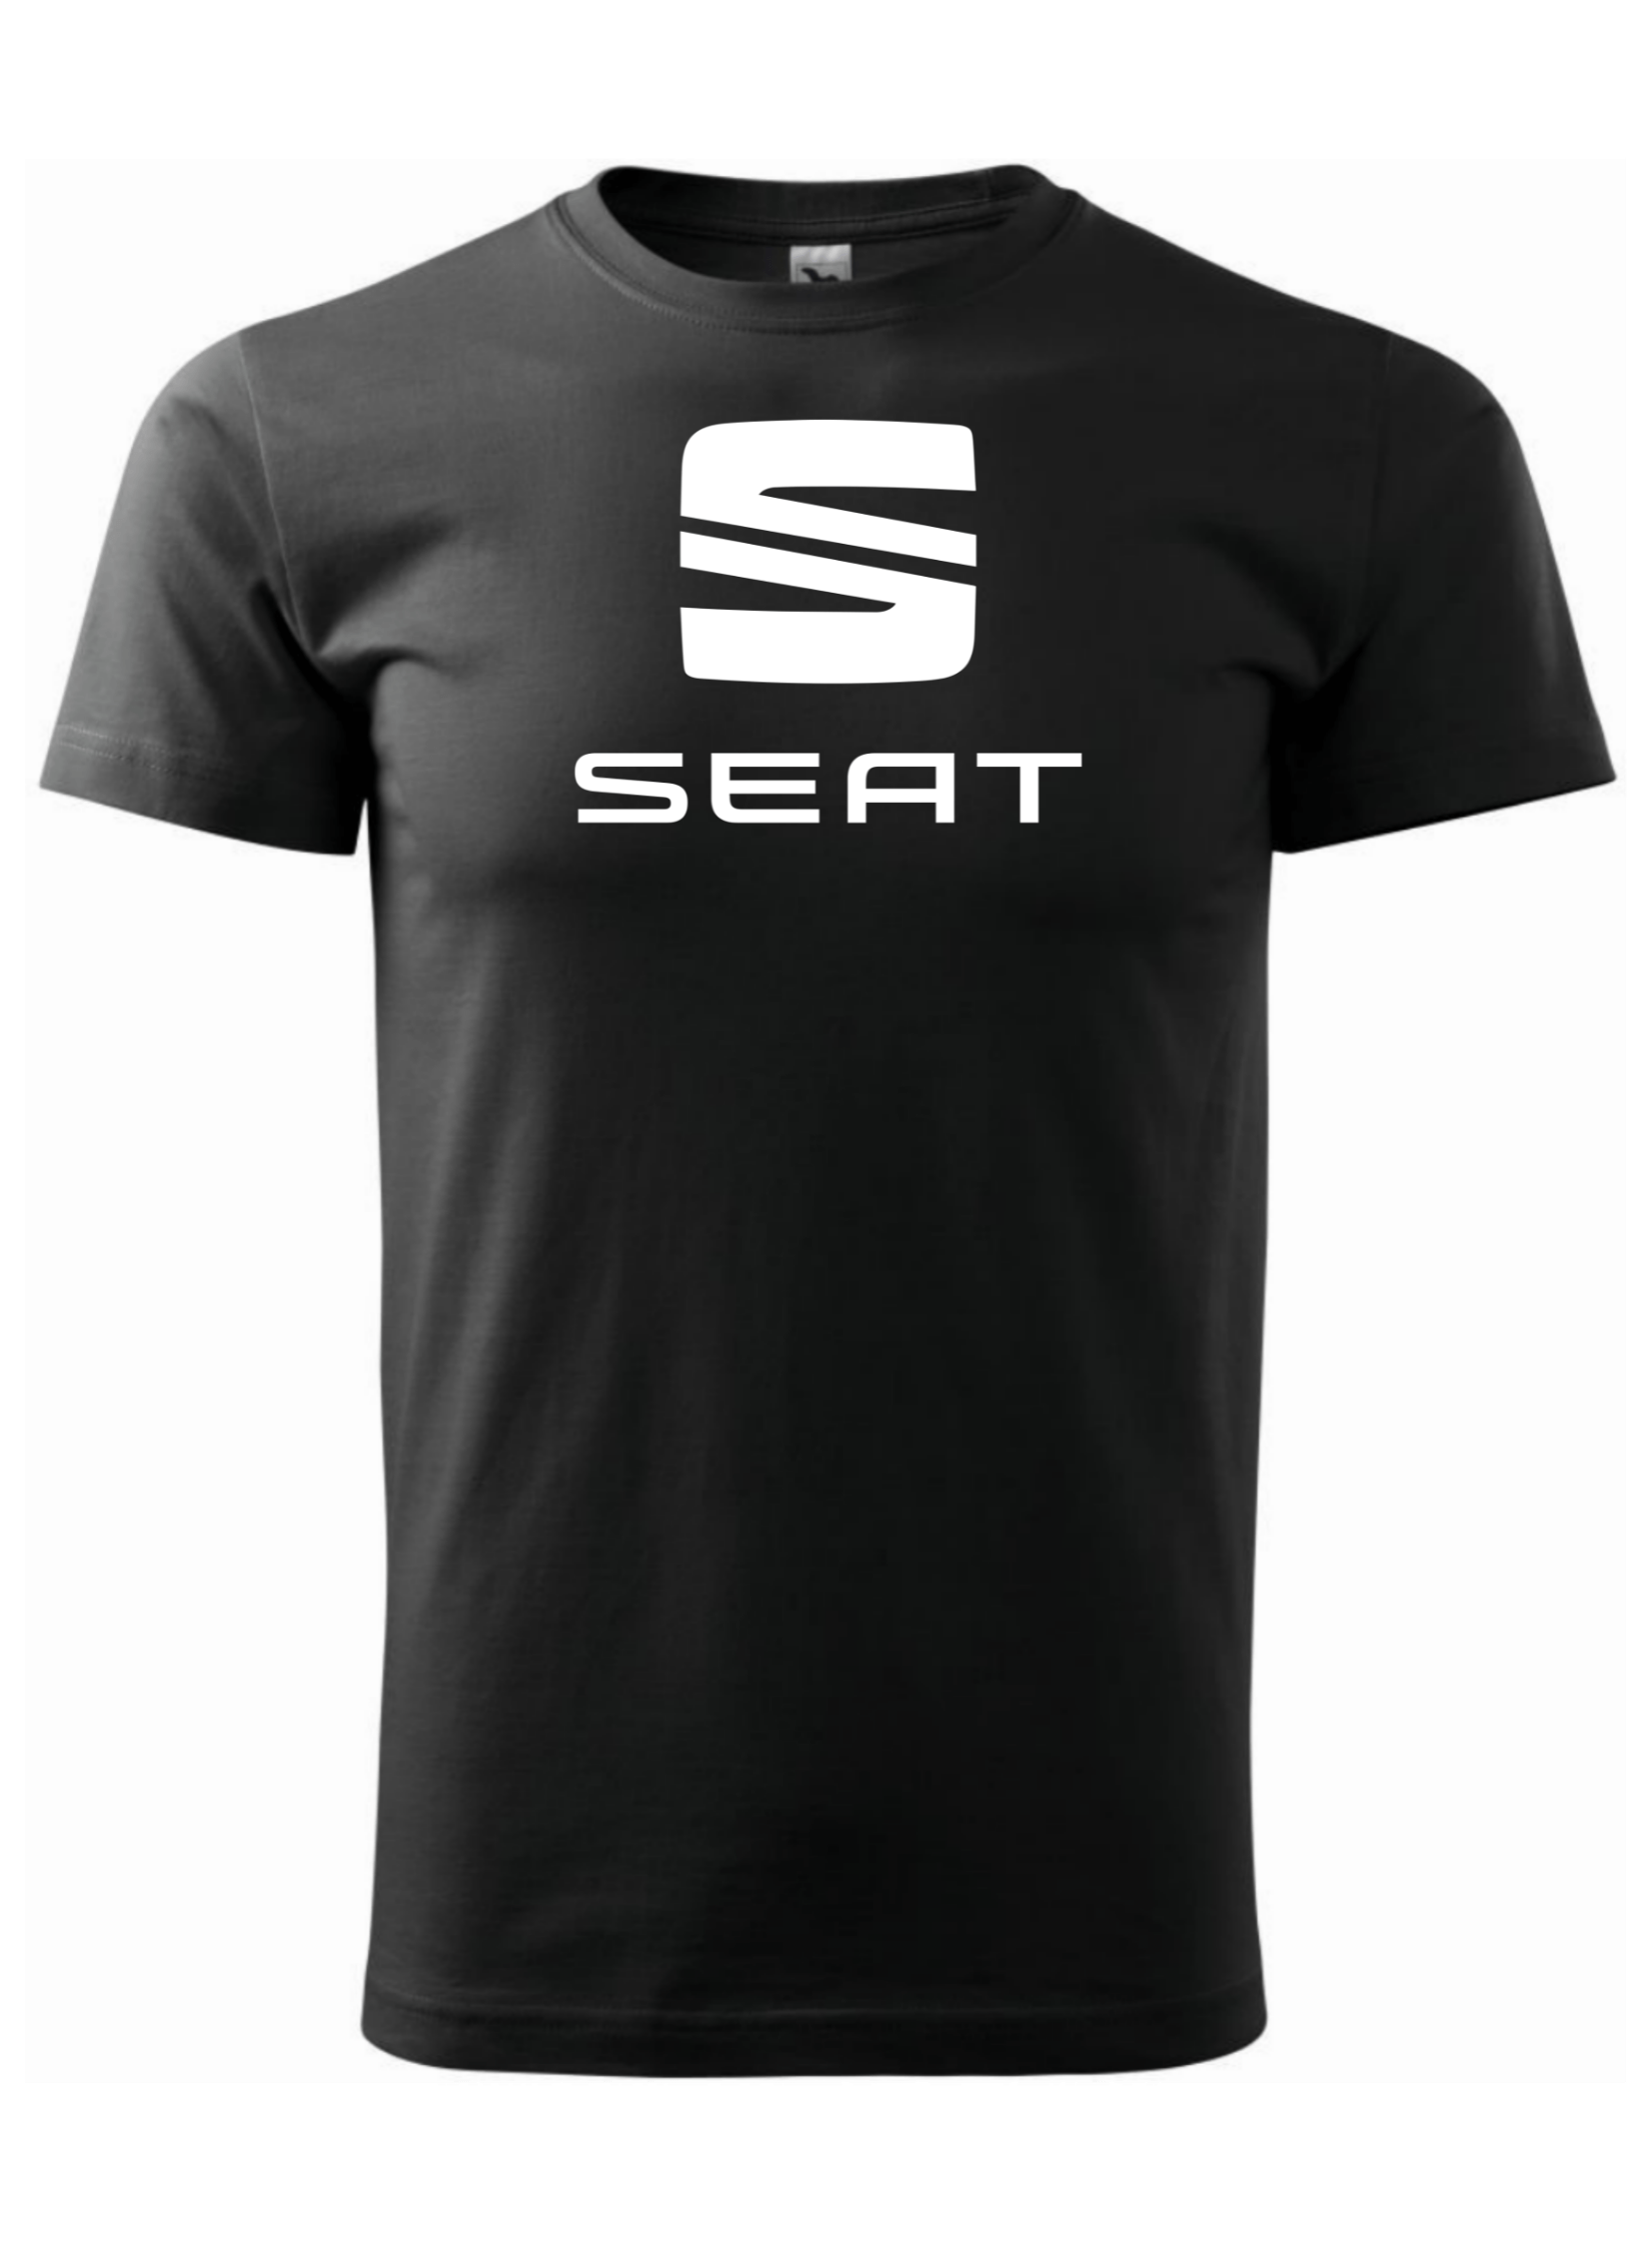 Pánské tričko s potiskem značky Seat